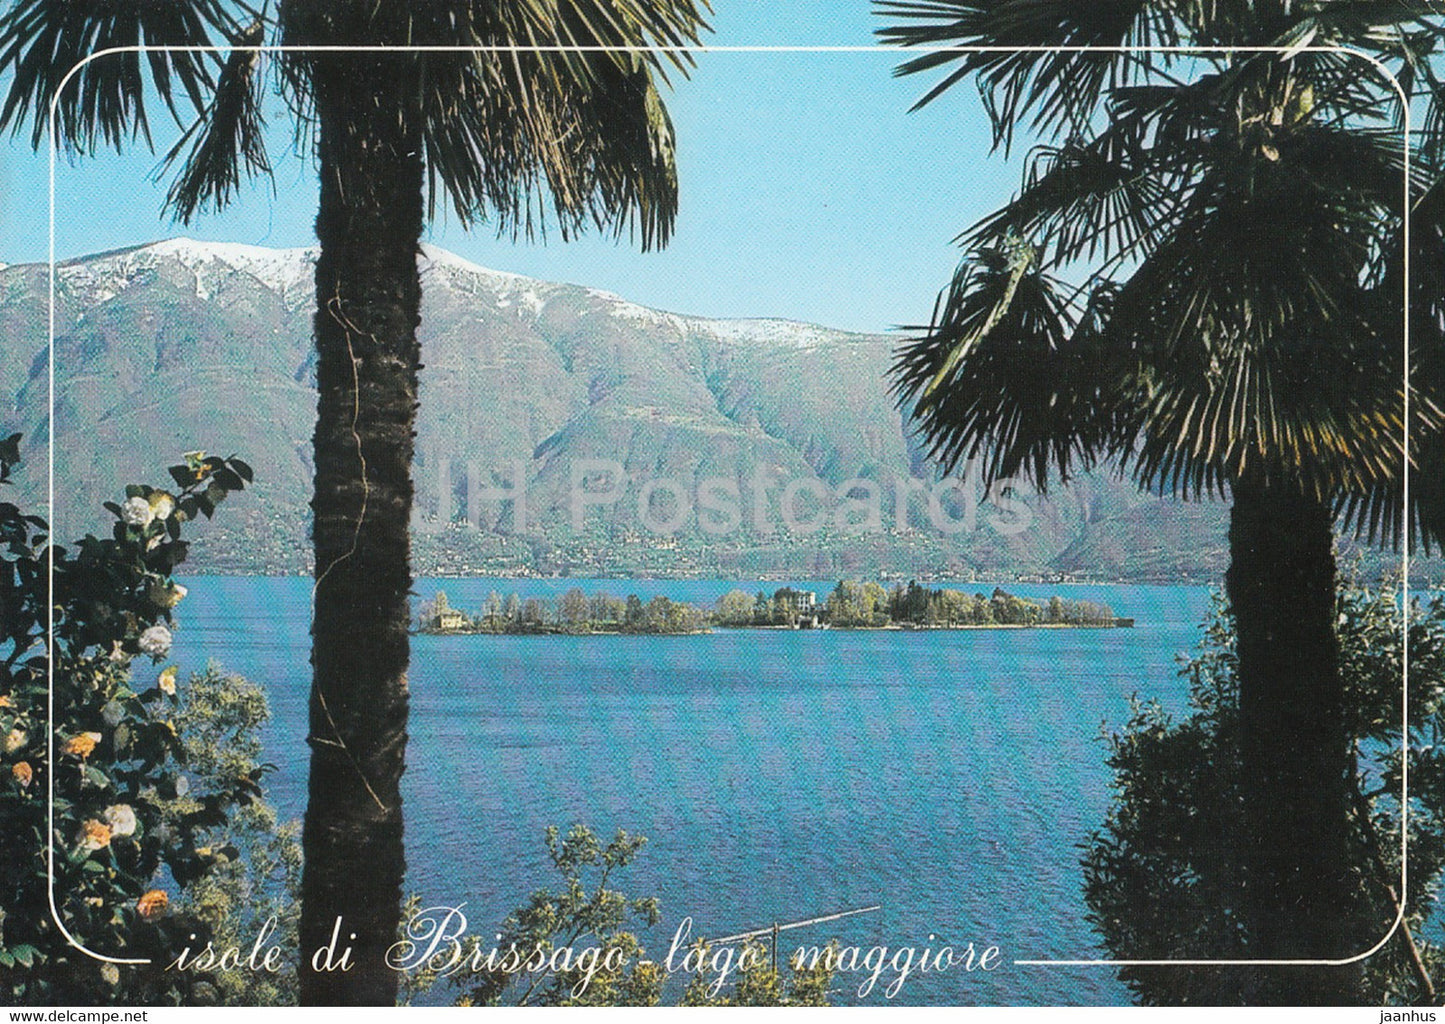 Isole di Brissago - Lago Maggiore - 6614 - 1995 - Switzerland - used - JH Postcards